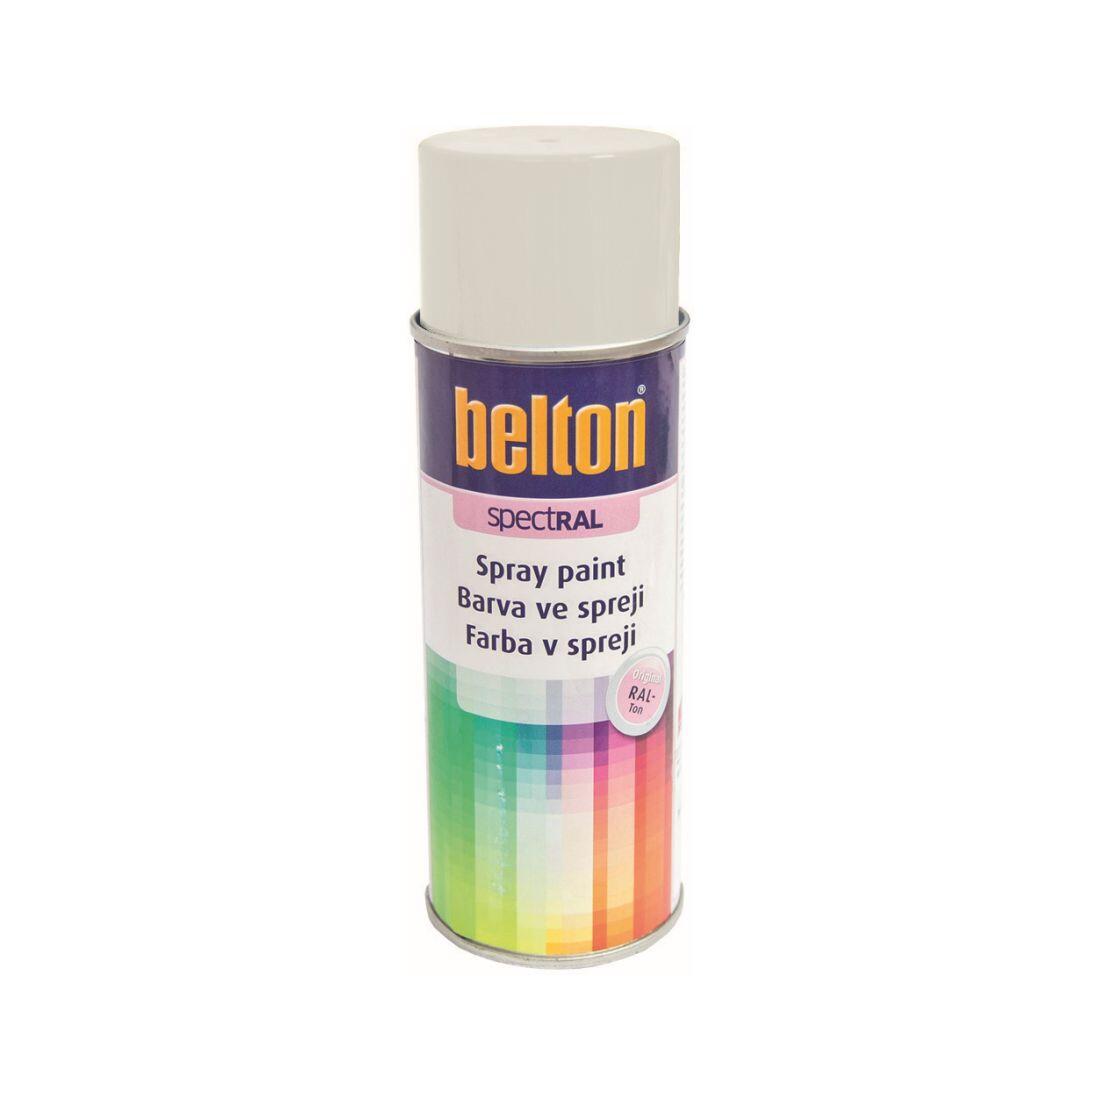 barva ve spreji BELTON RAL 9003, 400ml BÍ signální 0.31 Kg MAXMIX Sklad14 825571 2